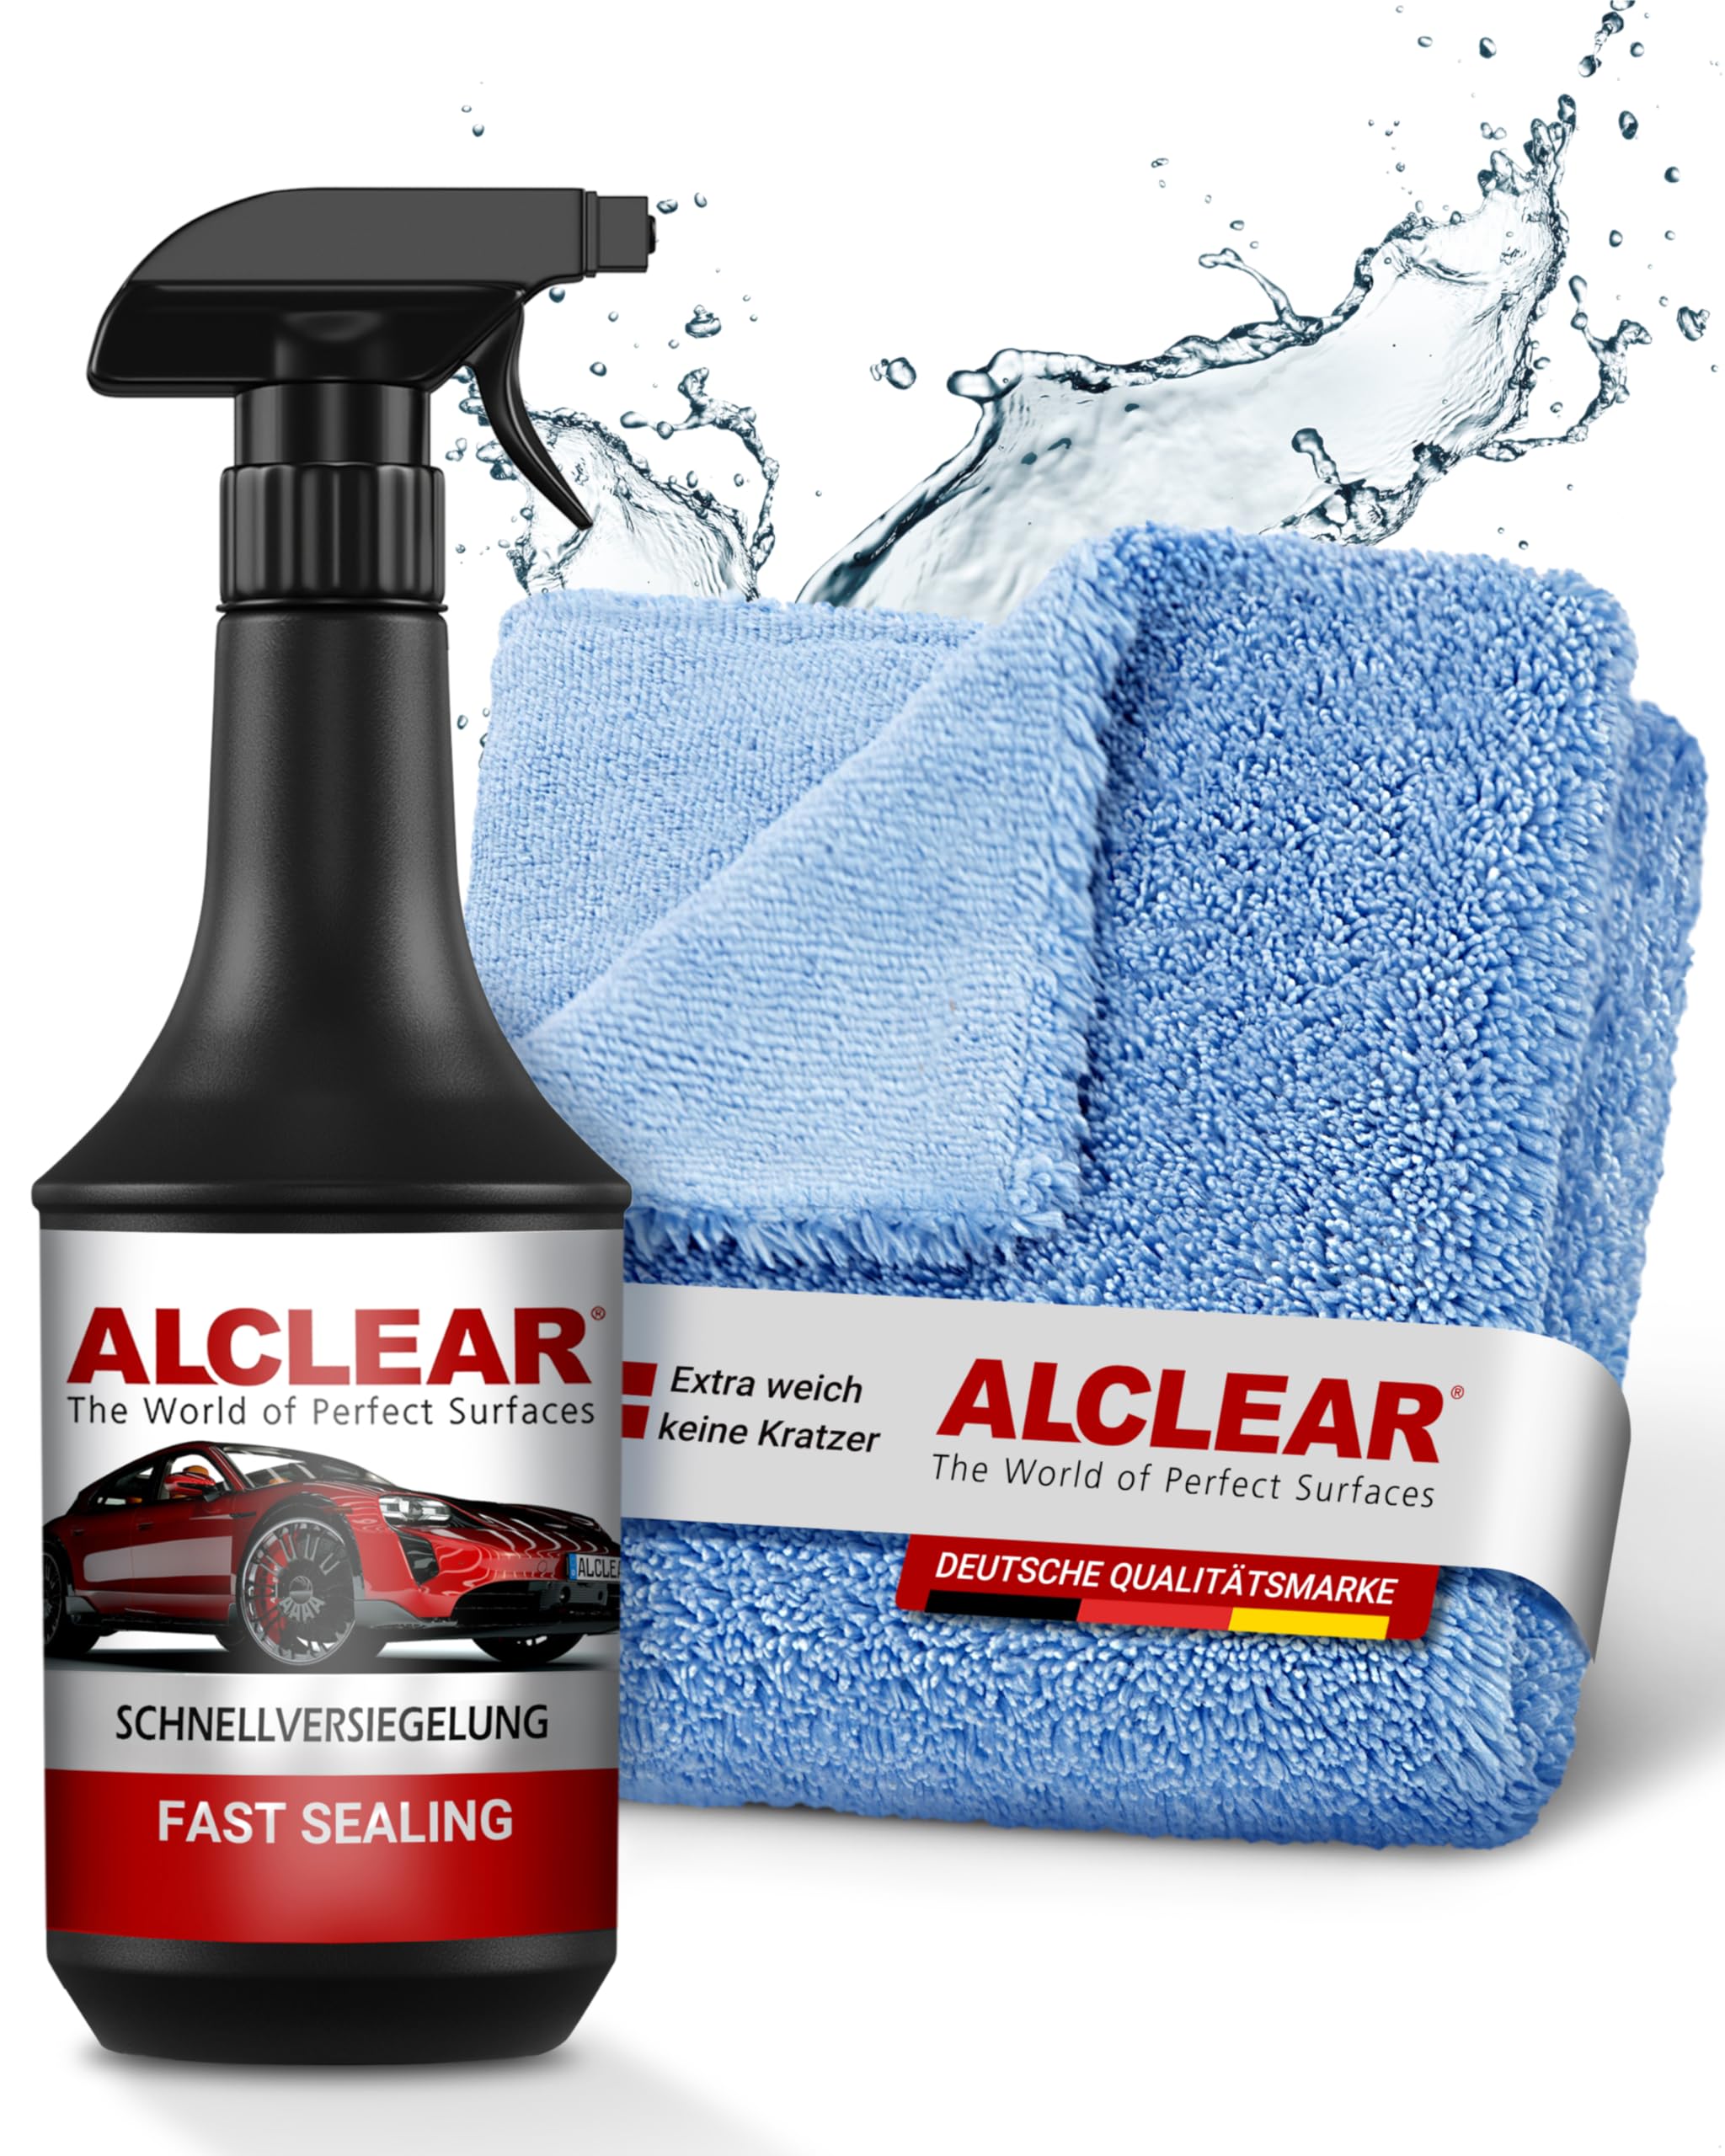 ALCLEAR 71100SV Lack Schnellversiegelung 1 Liter inkl. Mikrofaser Auto Poliertuch für Autopflege, Motorrad, Fahrrad